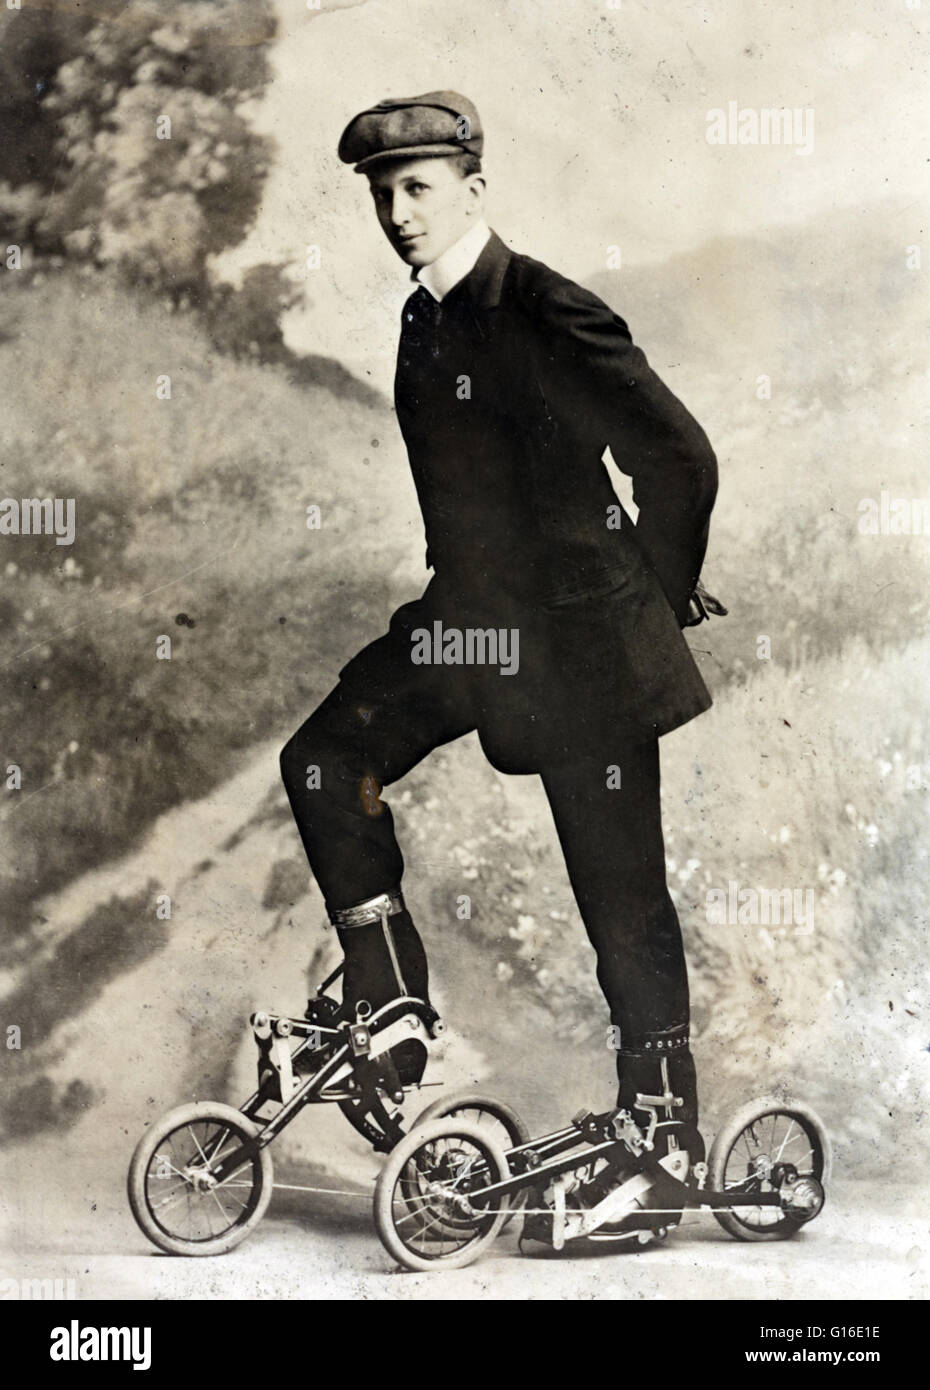 Unter dem Titel: "Roller skating" zeigt einen jungen Mann auf Miniatur, zweirädrigen Fahrrad-wie Inline-Skates, die radelten sind. Takypod ist eine Maschine wird angetrieben durch die Pedale, aber im Gegensatz zu einem Fahrrad, der Fahrer sitzt auf, Takypoden an den Füßen befestigt sind. Der Erfinder war E Stockfoto